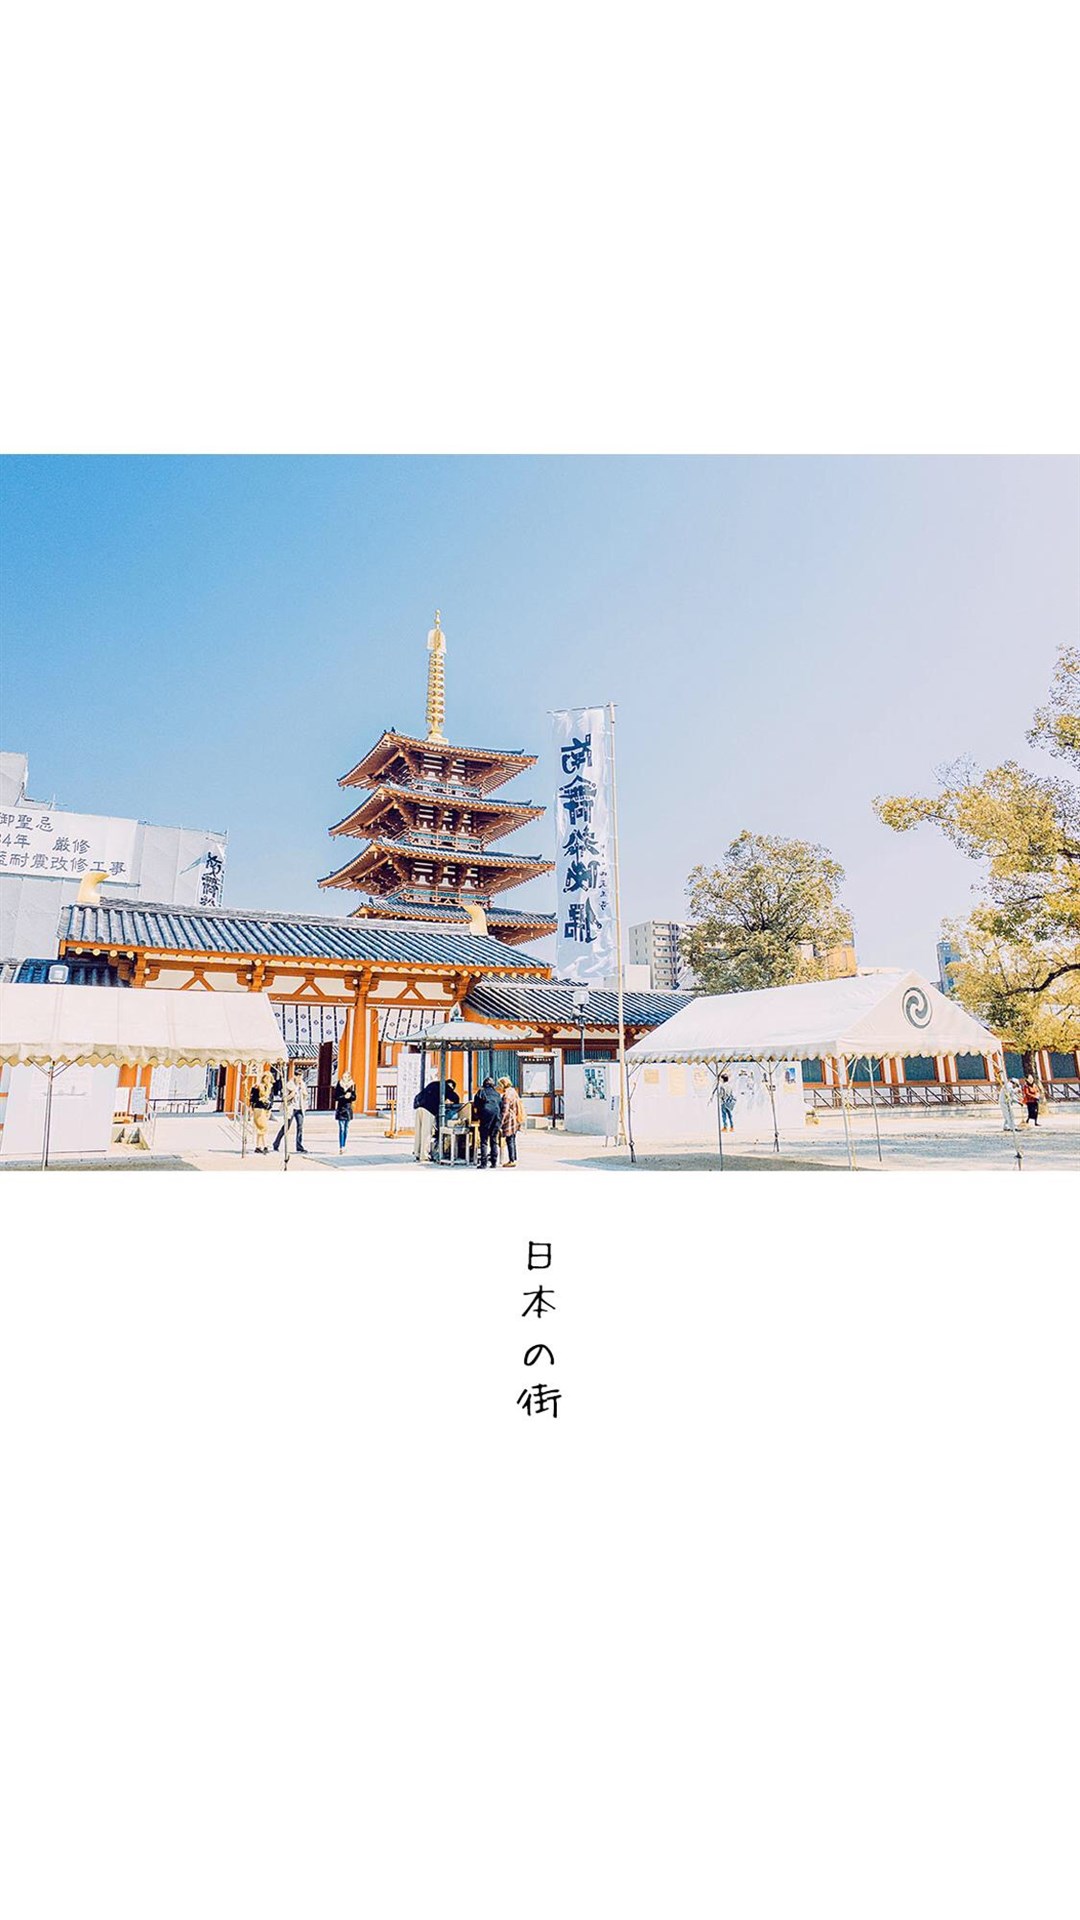 街景图片素材 清新简约日本街景风光手机壁纸(4)